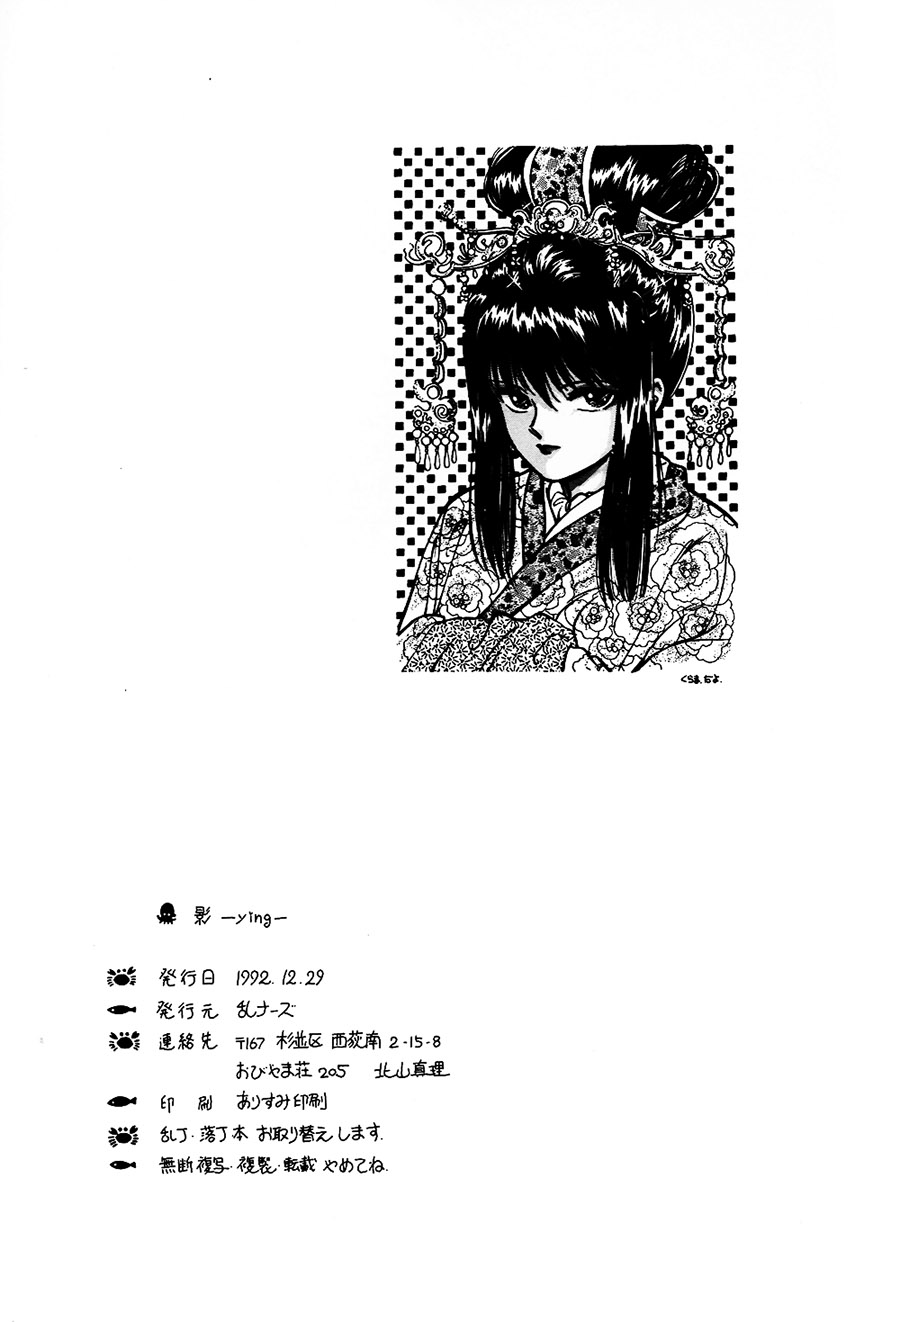 【漫画】乱ナーズ/北山鱼《影》NO.2 Img28521